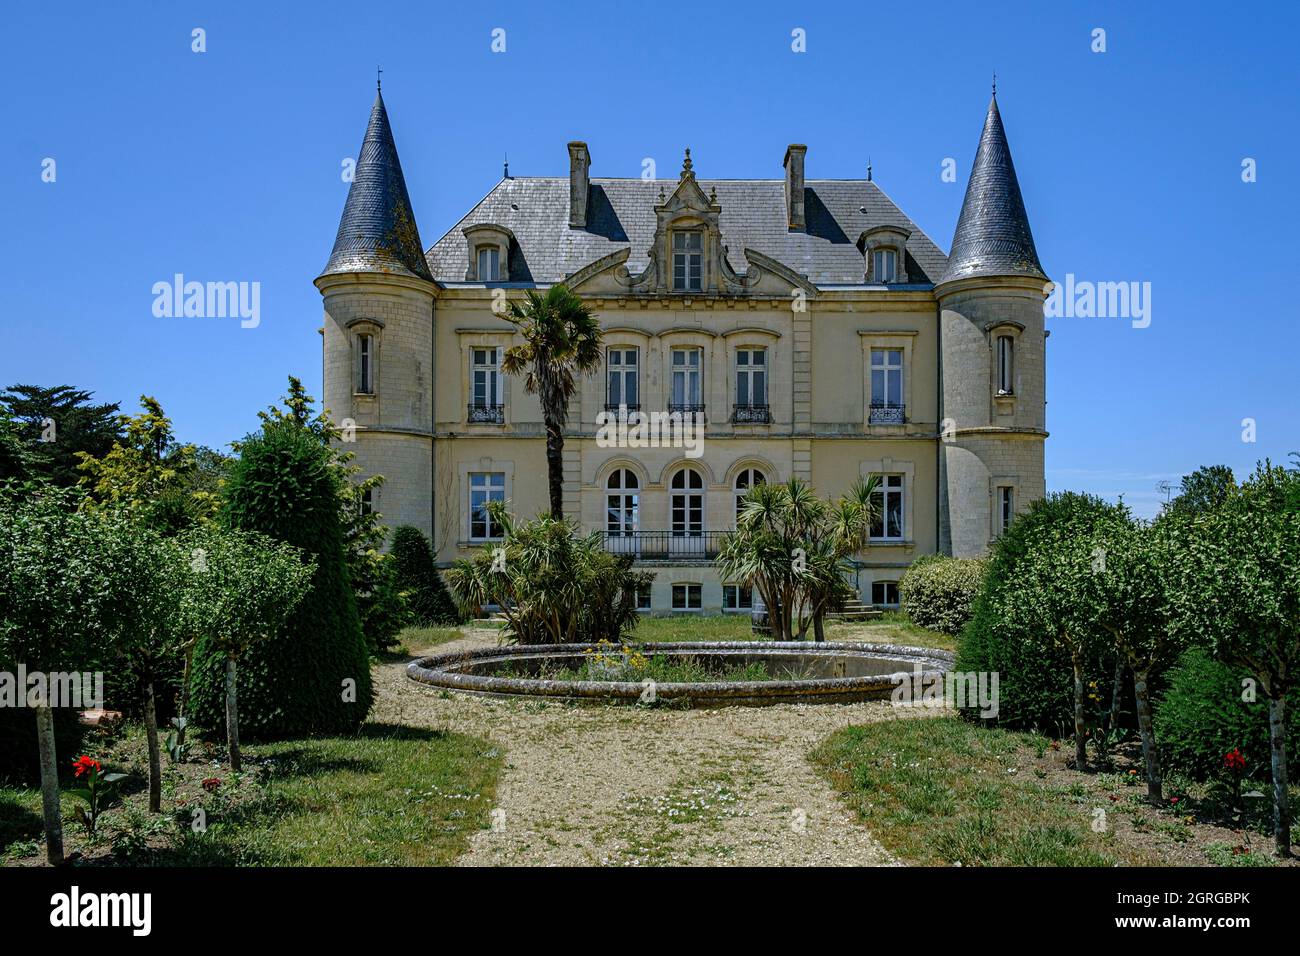 France, Charente-Maritime, île d'Oléron, Saint-Georges d'Oléron, château de Fournier Banque D'Images